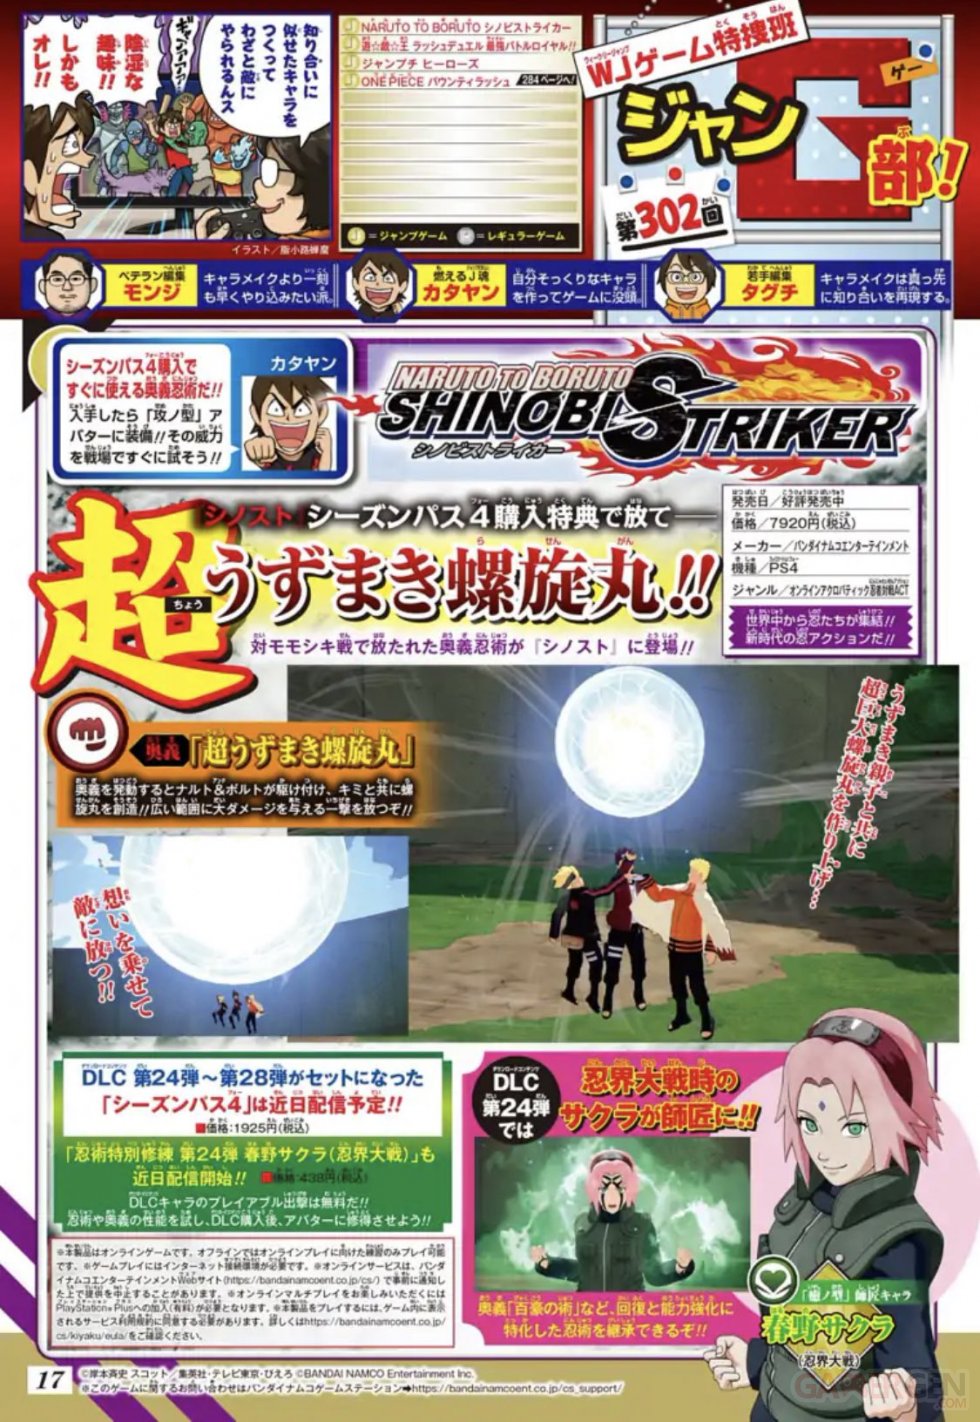 Naruto-to-Boruto-Shinobi-Striker_14-06-2021_scan-Sakura-DLC-24